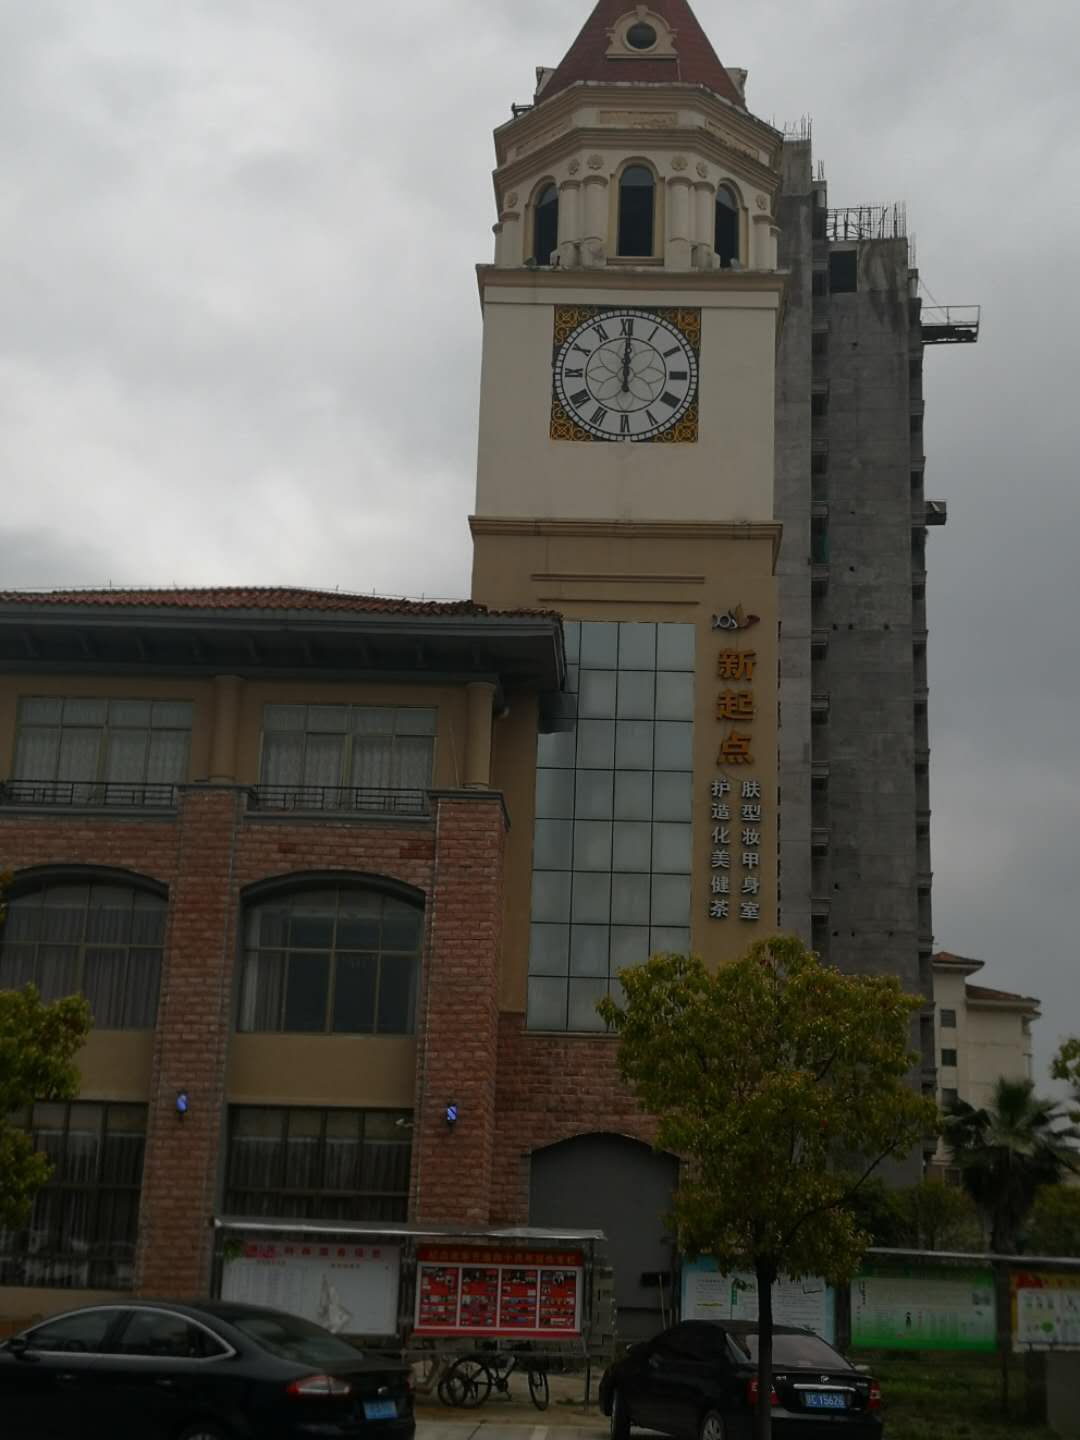 塔楼大钟 建筑装饰大钟 学校外墙大钟 户外建筑大钟 室外大钟表 楼顶大挂钟